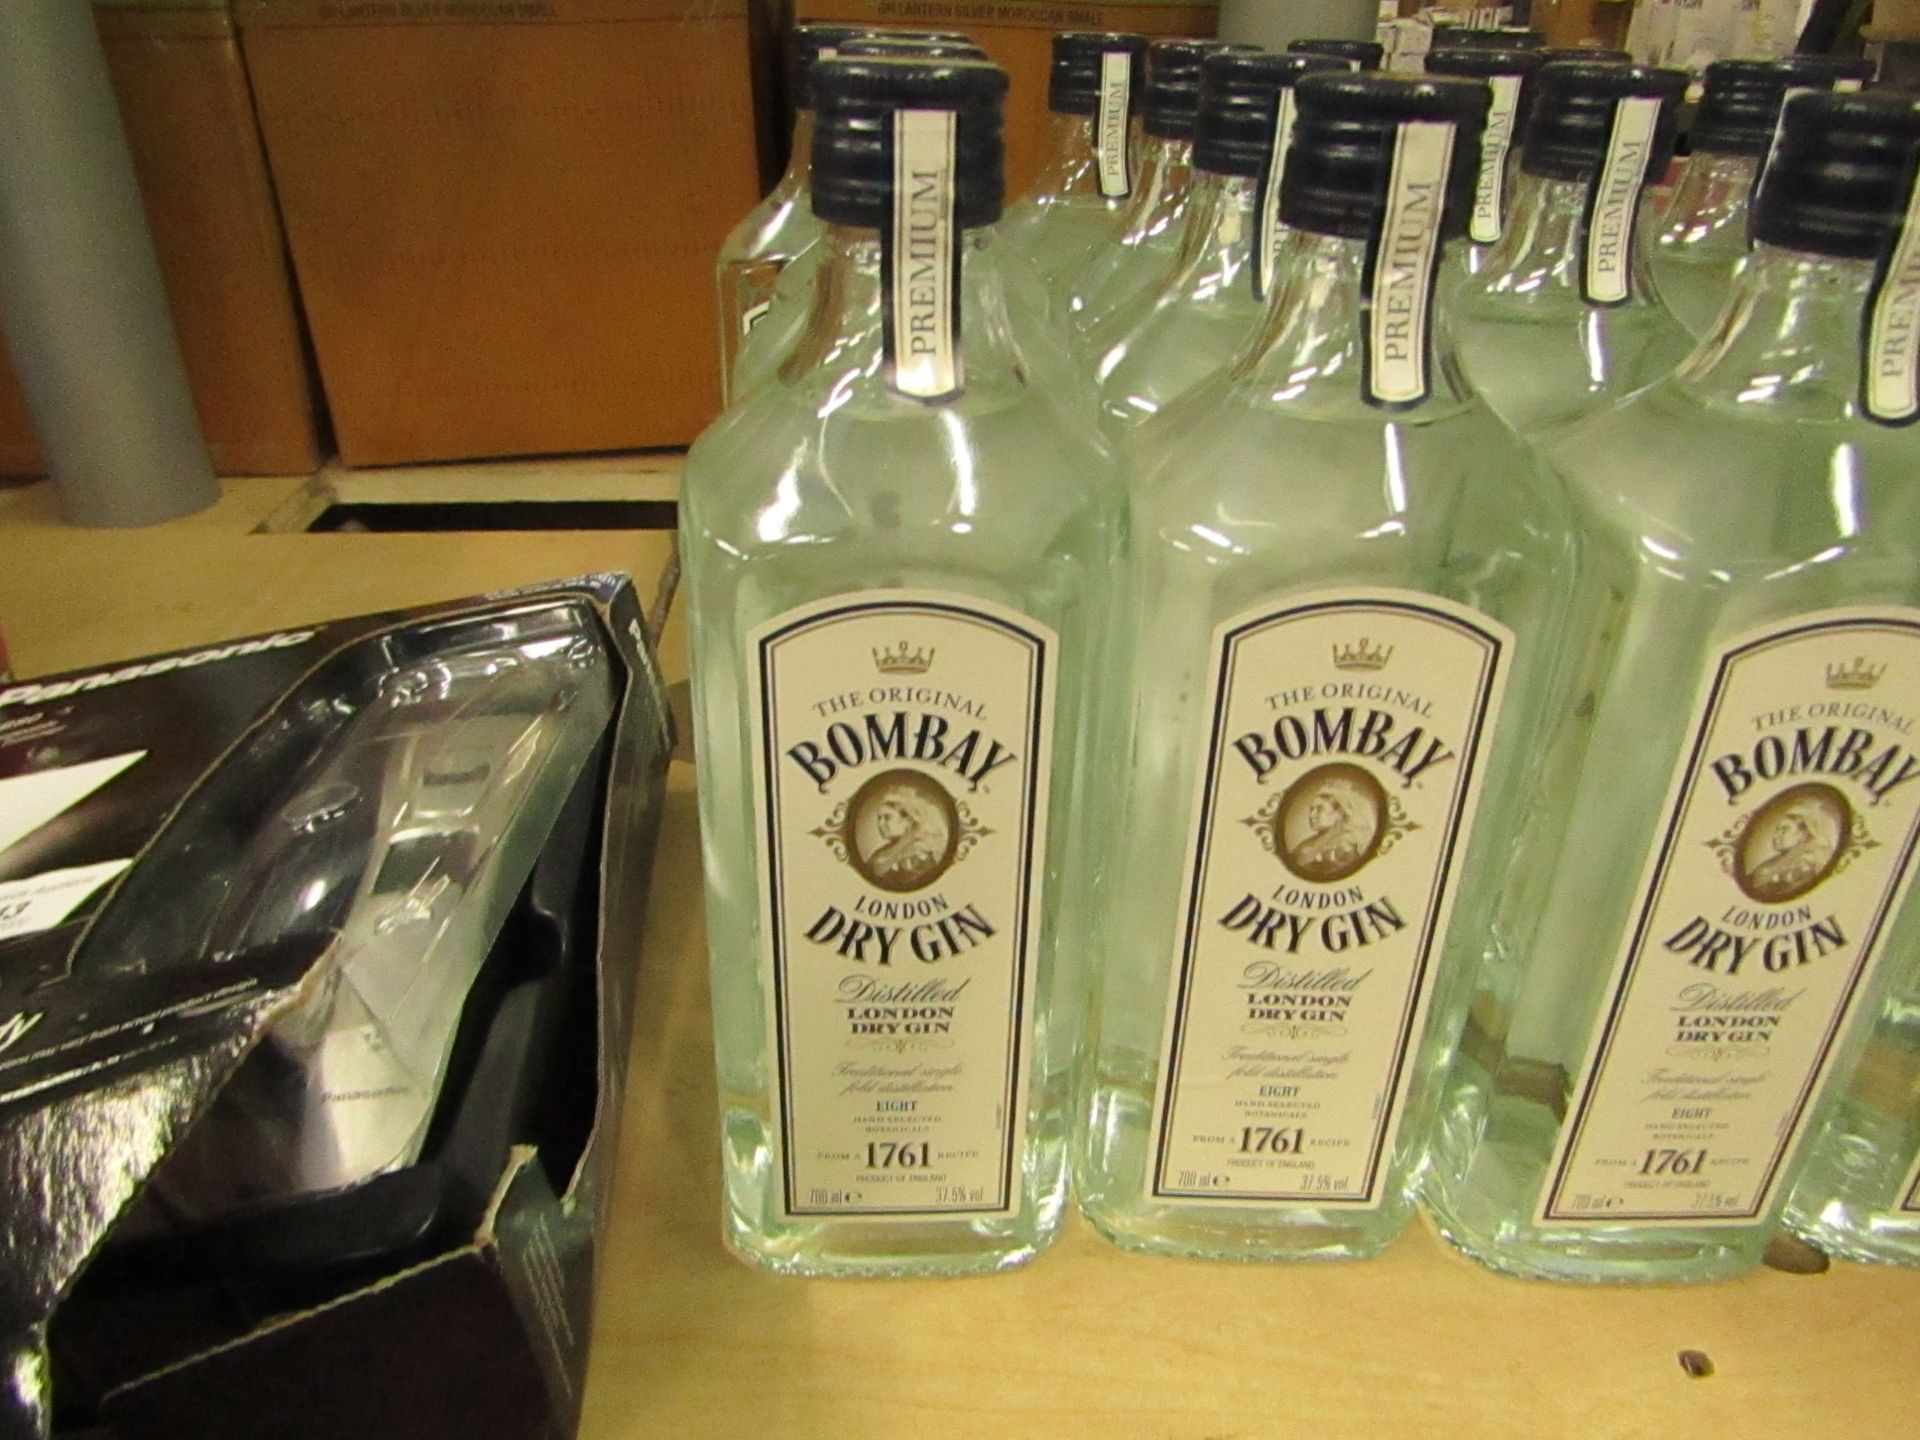 Bombay Dry Gin. 700ml bottle. New. RRP £16 @ Asda